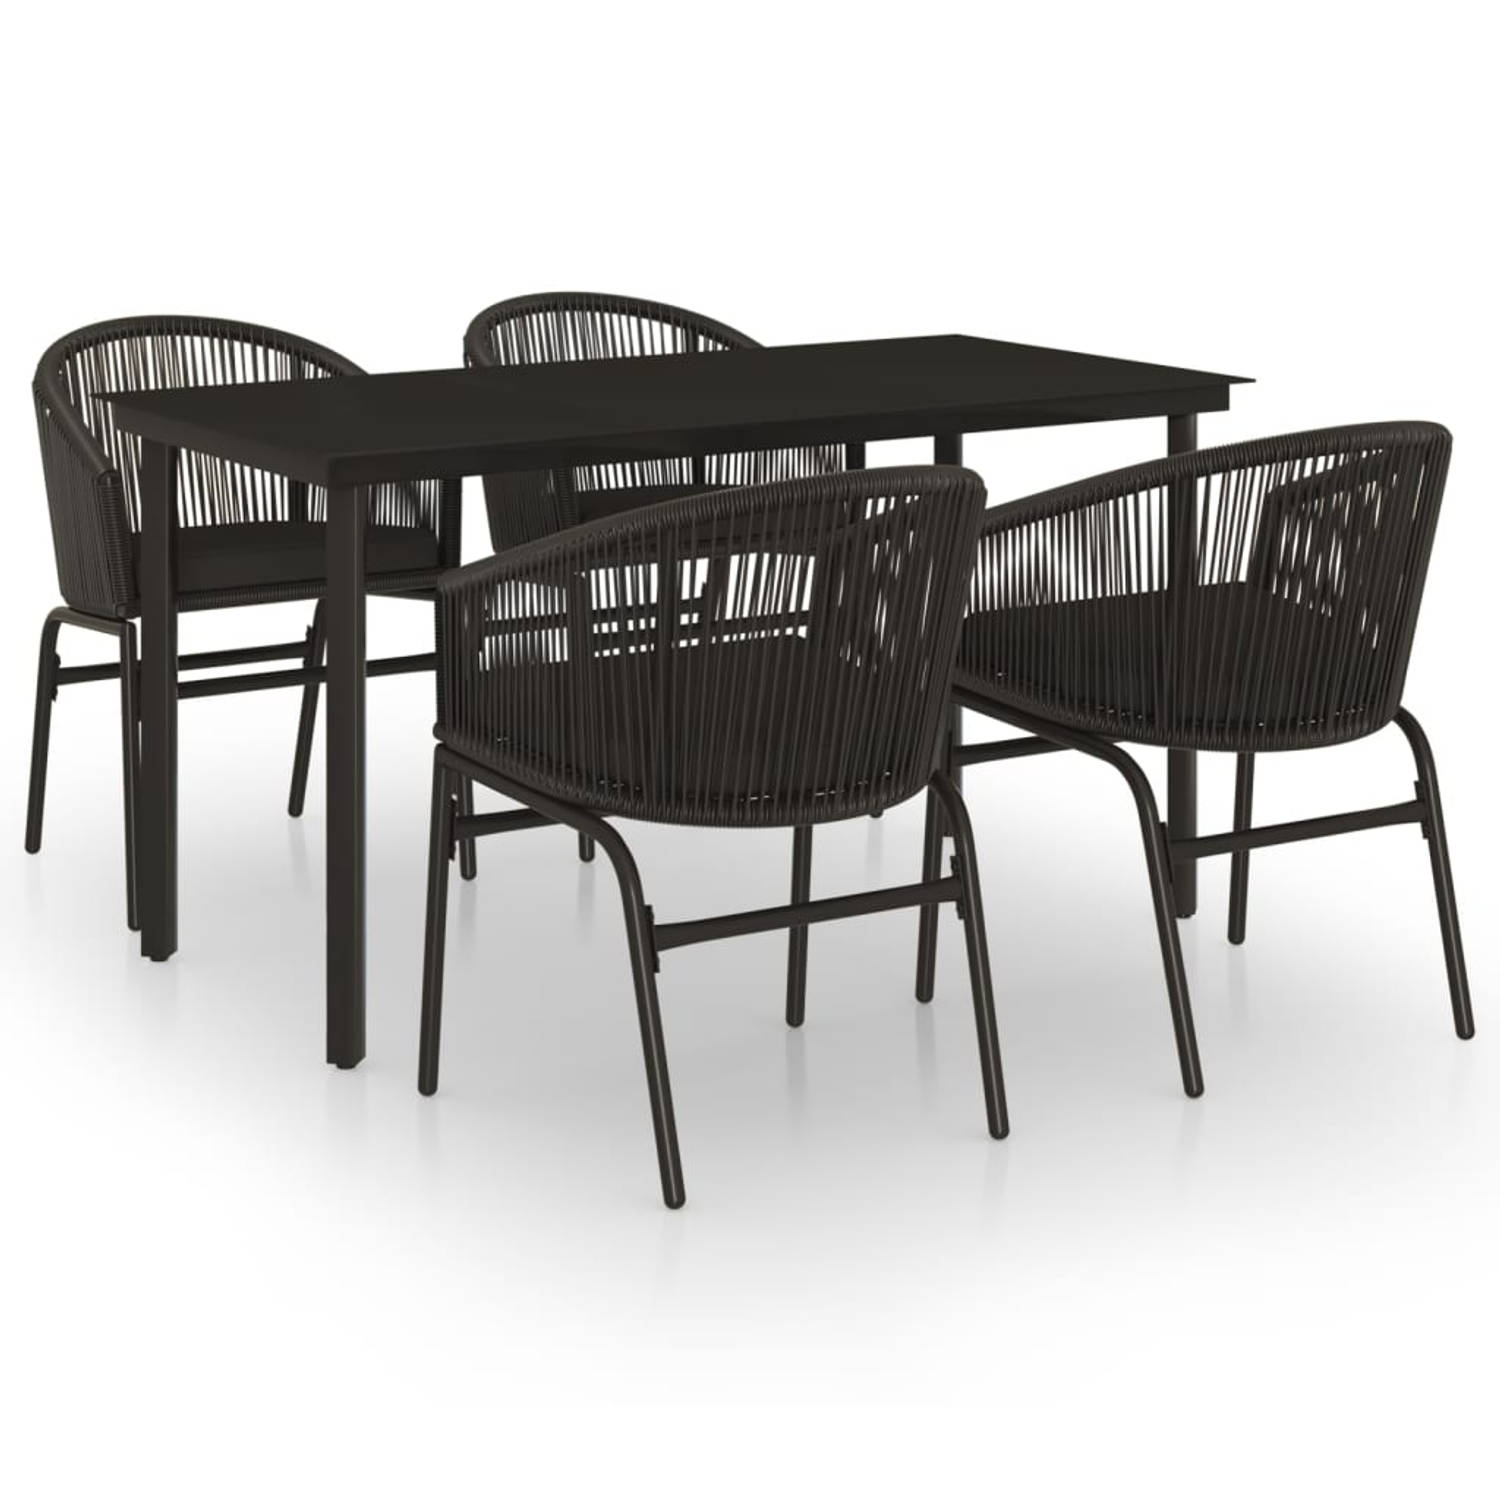 The Living Store Tuinset - Tuinmeubelen - 140 x 70 x 74 cm - Zwarte gepoedercoat stalen tafel met glazen tafelblad en 4 zwarte PVC-rattan stoelen met kussens